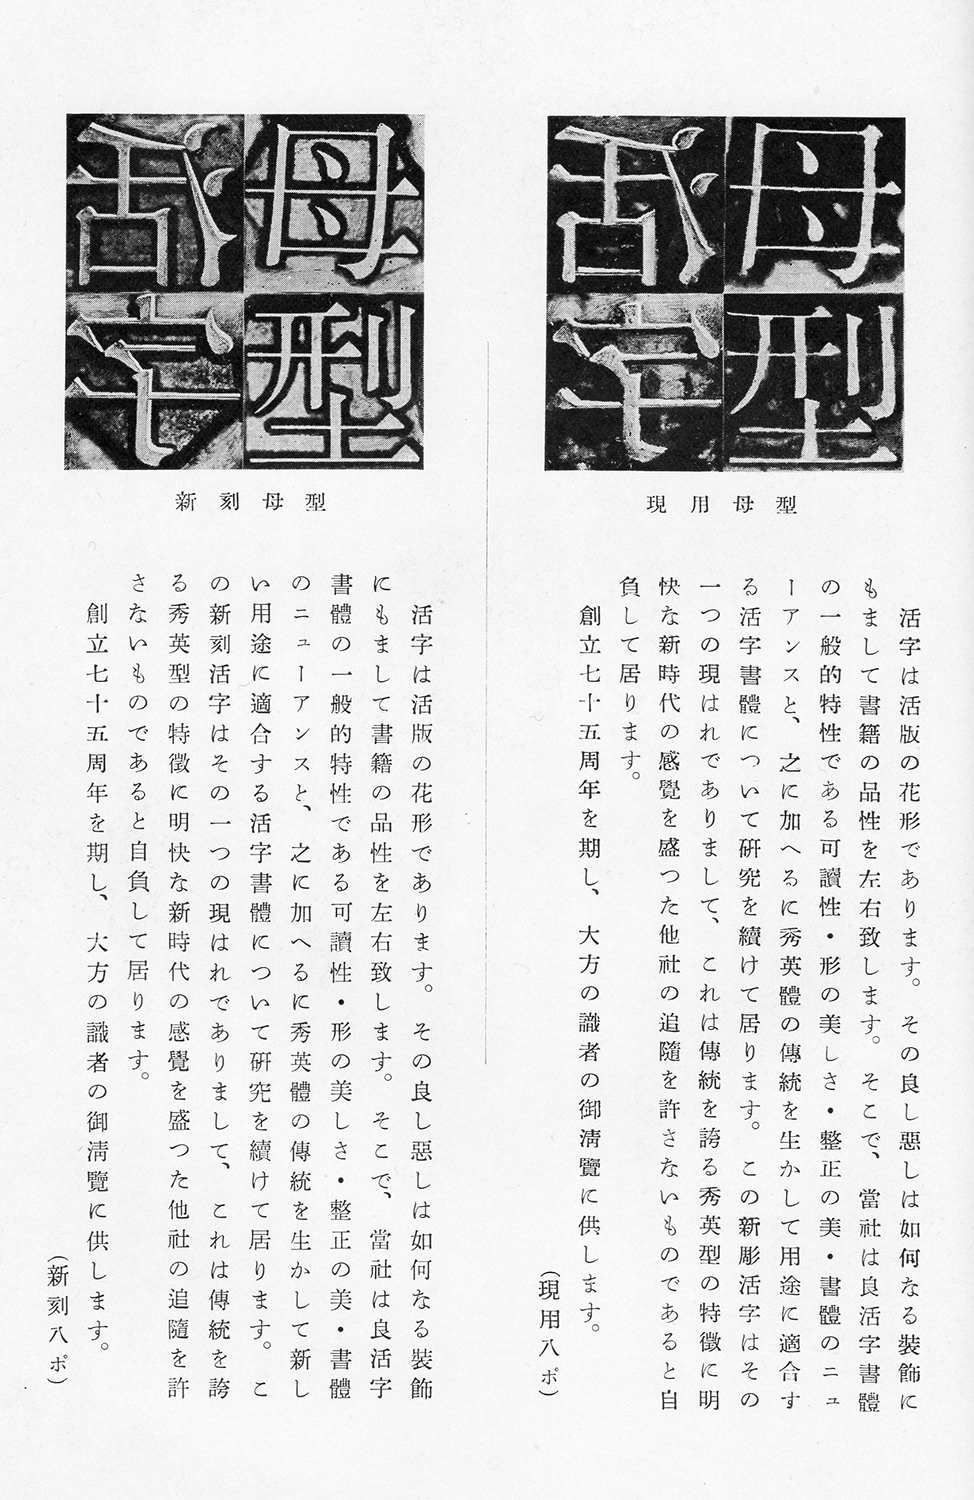 『七十五年の歩み : 大日本印刷株式会社史』（大日本印刷、1952）に掲載された現用8ポ（既存の電胎母型から鋳造した活字）、新刻8ポ（ベントン彫刻機による彫刻母型から鋳造した活字）の印刷見本